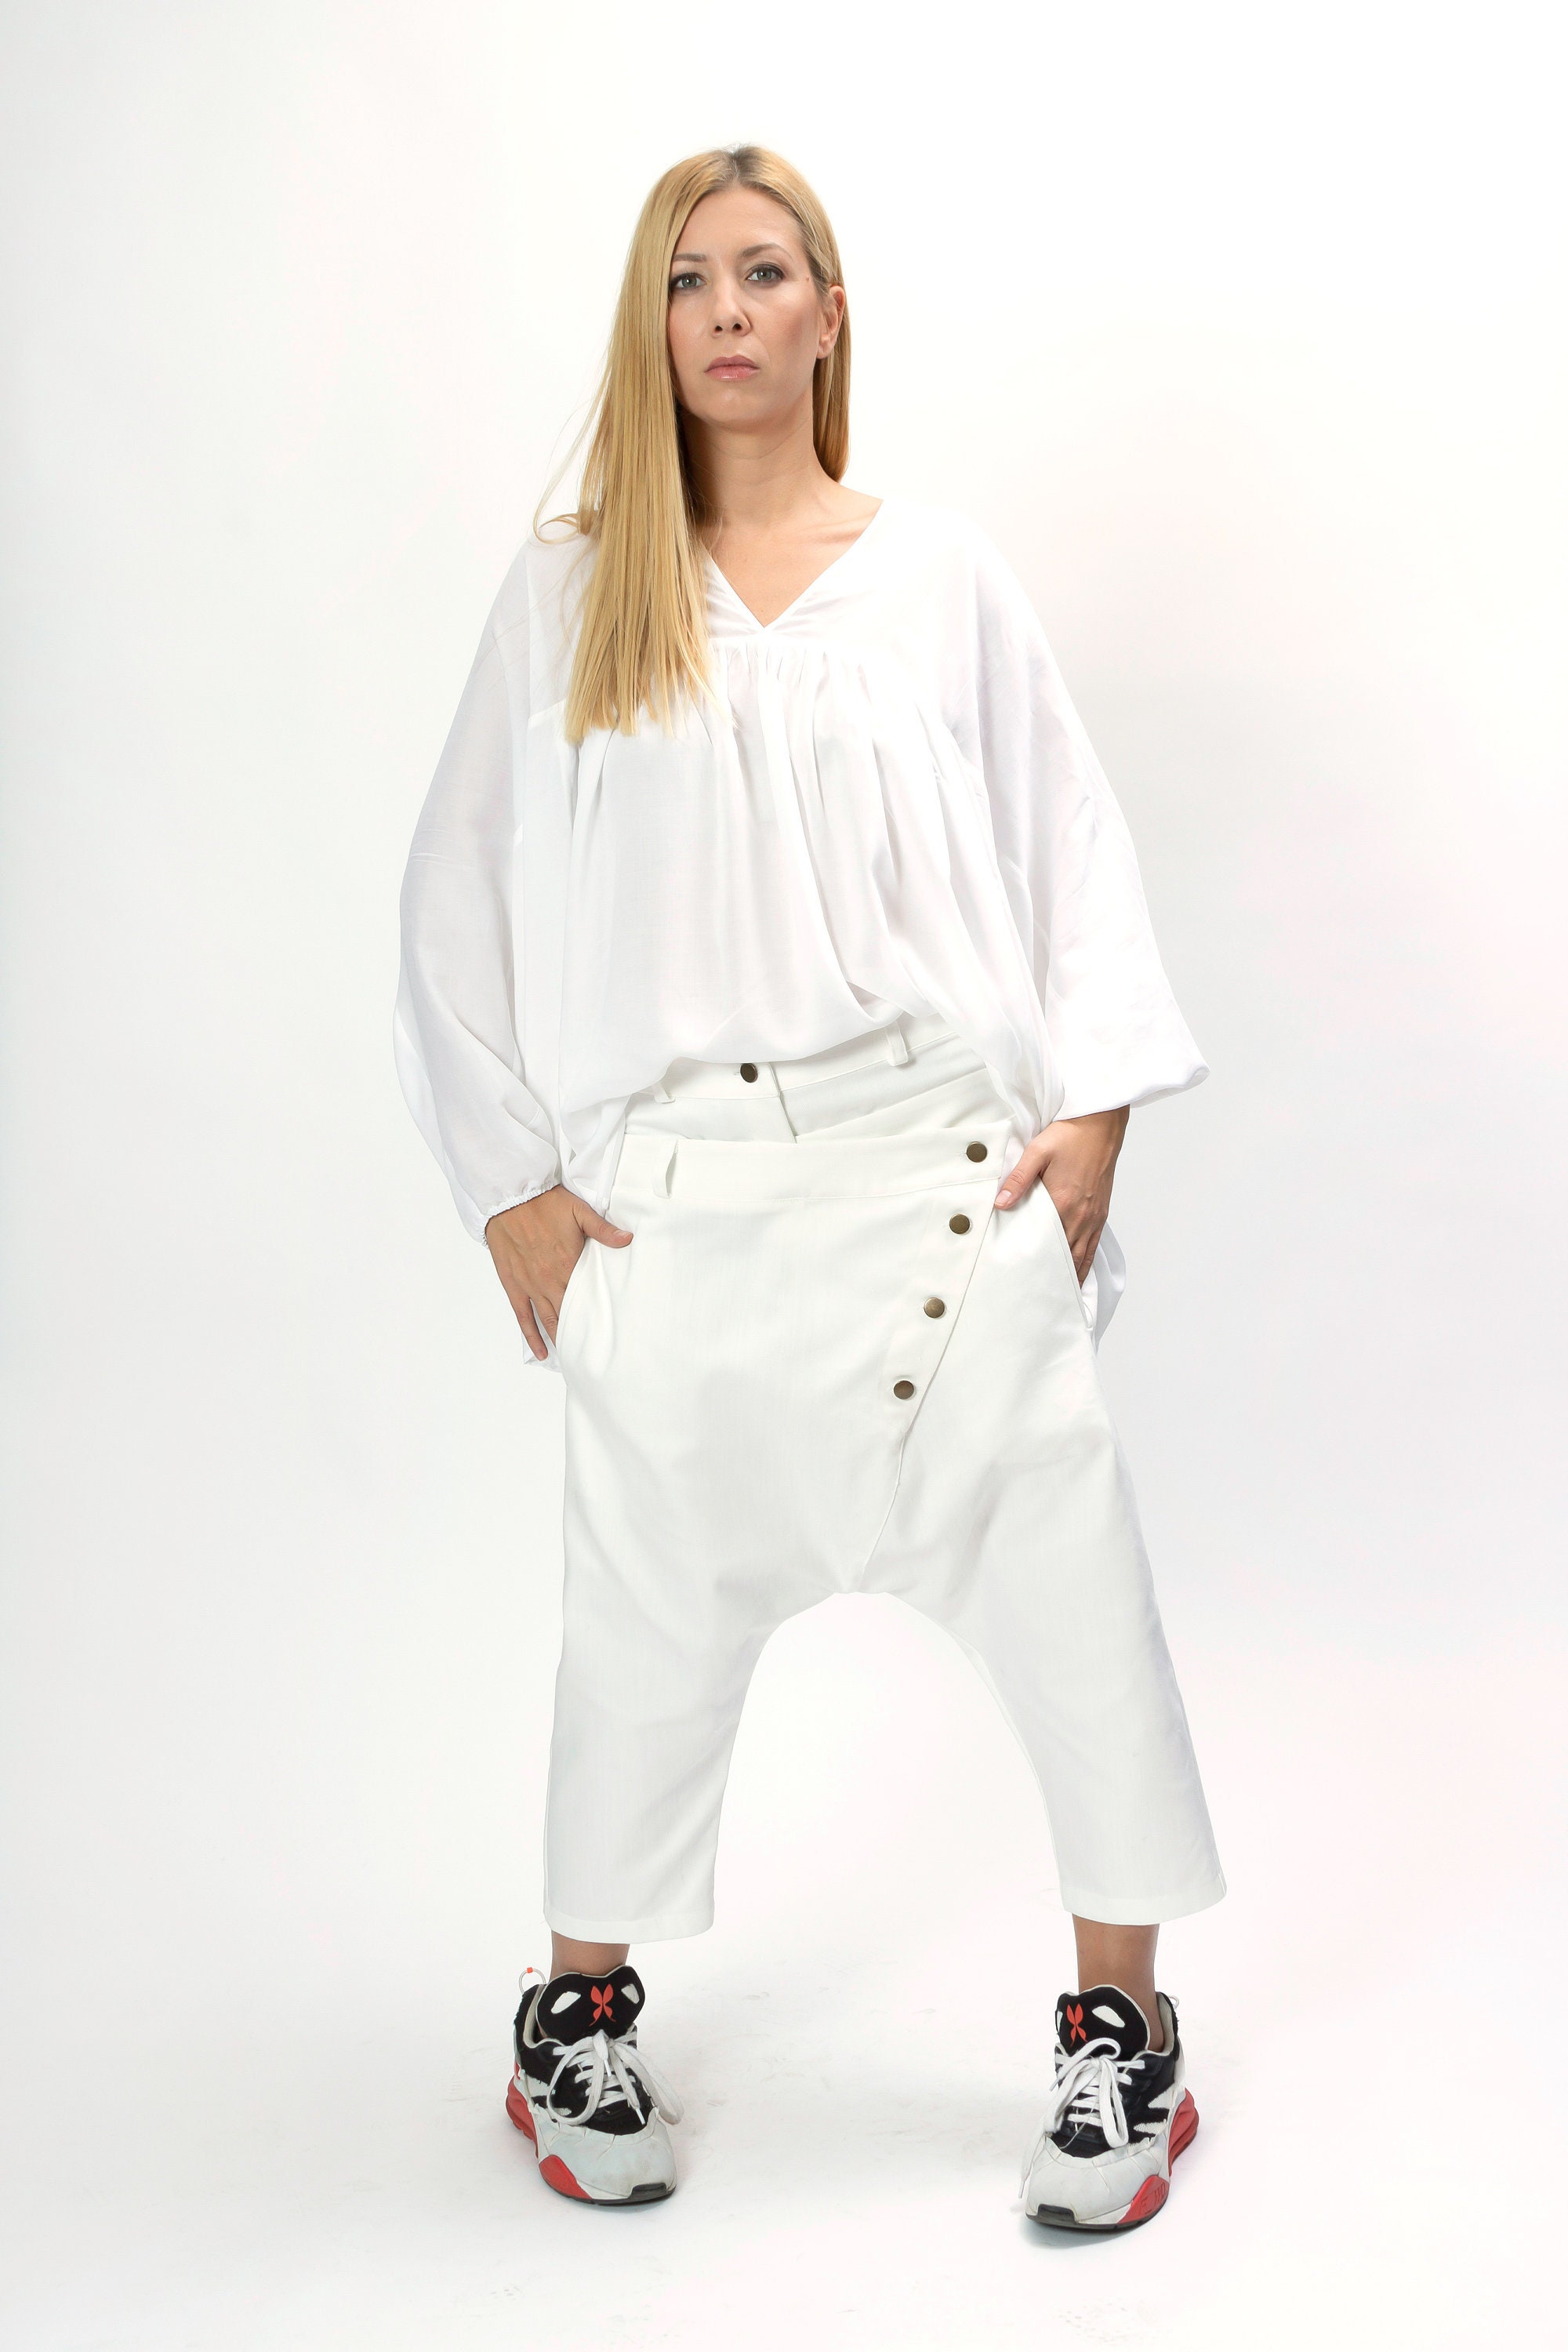 Harem davant-garde pantalons harem femmes pantalons en pour femmes, pour - pour pantalons blanc vêtements France femmes, Pantalon Etsy amples femmes, Capri denim